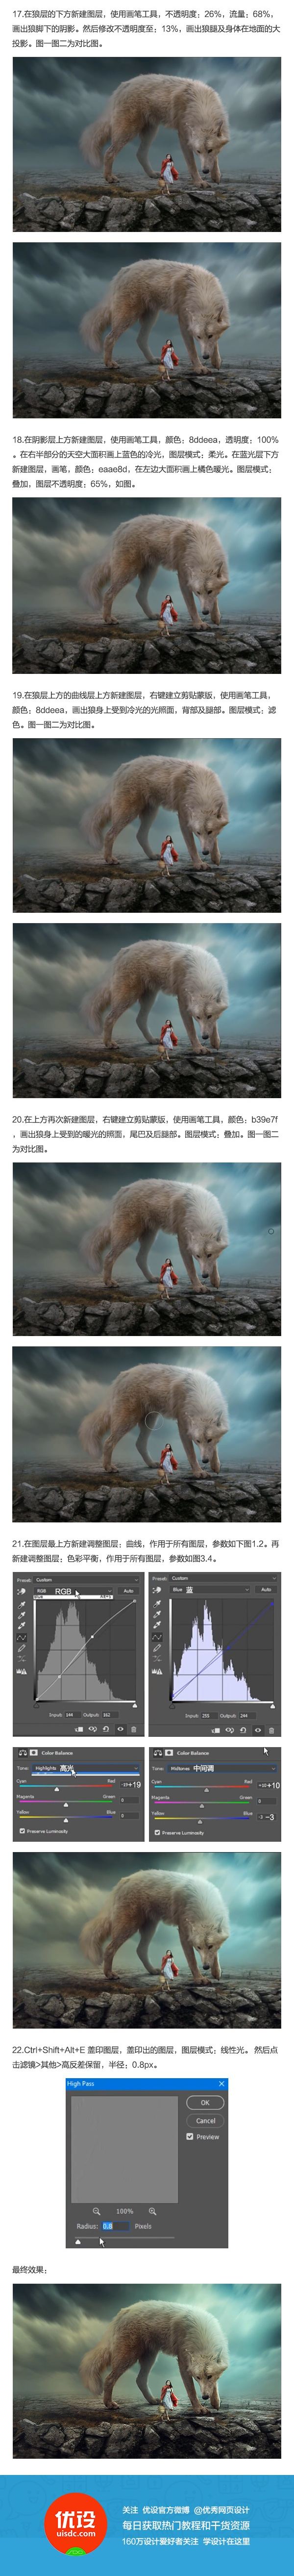 Photoshop合成创意的白狼和小红帽场景图,PS教程,素材中国网